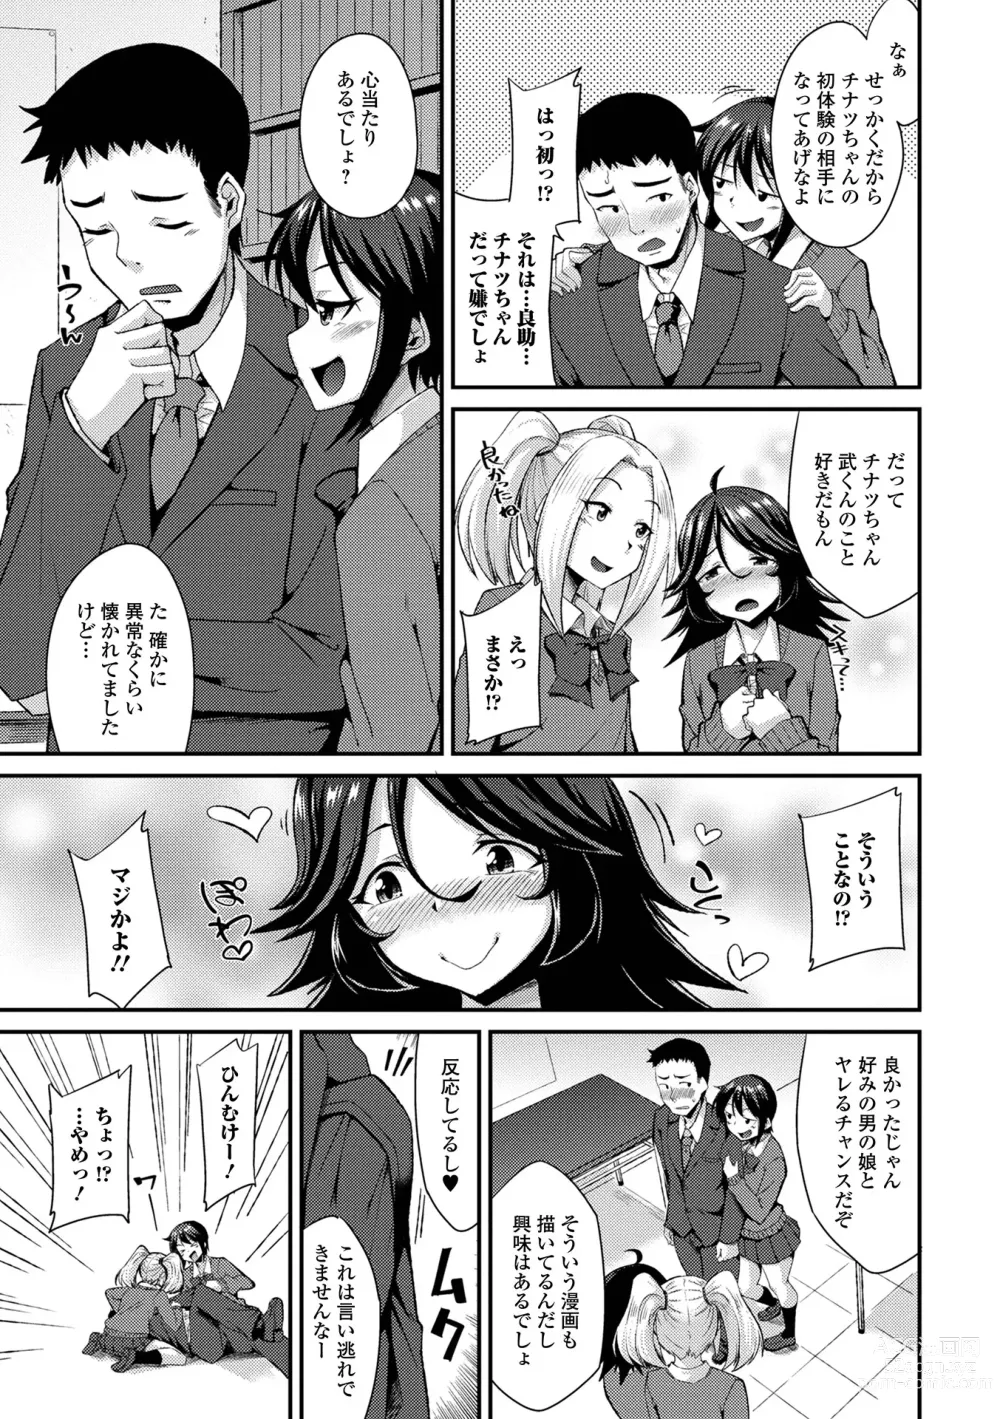 Page 9 of manga Gekkan Web Otoko no Ko-llection! S Vol. 94